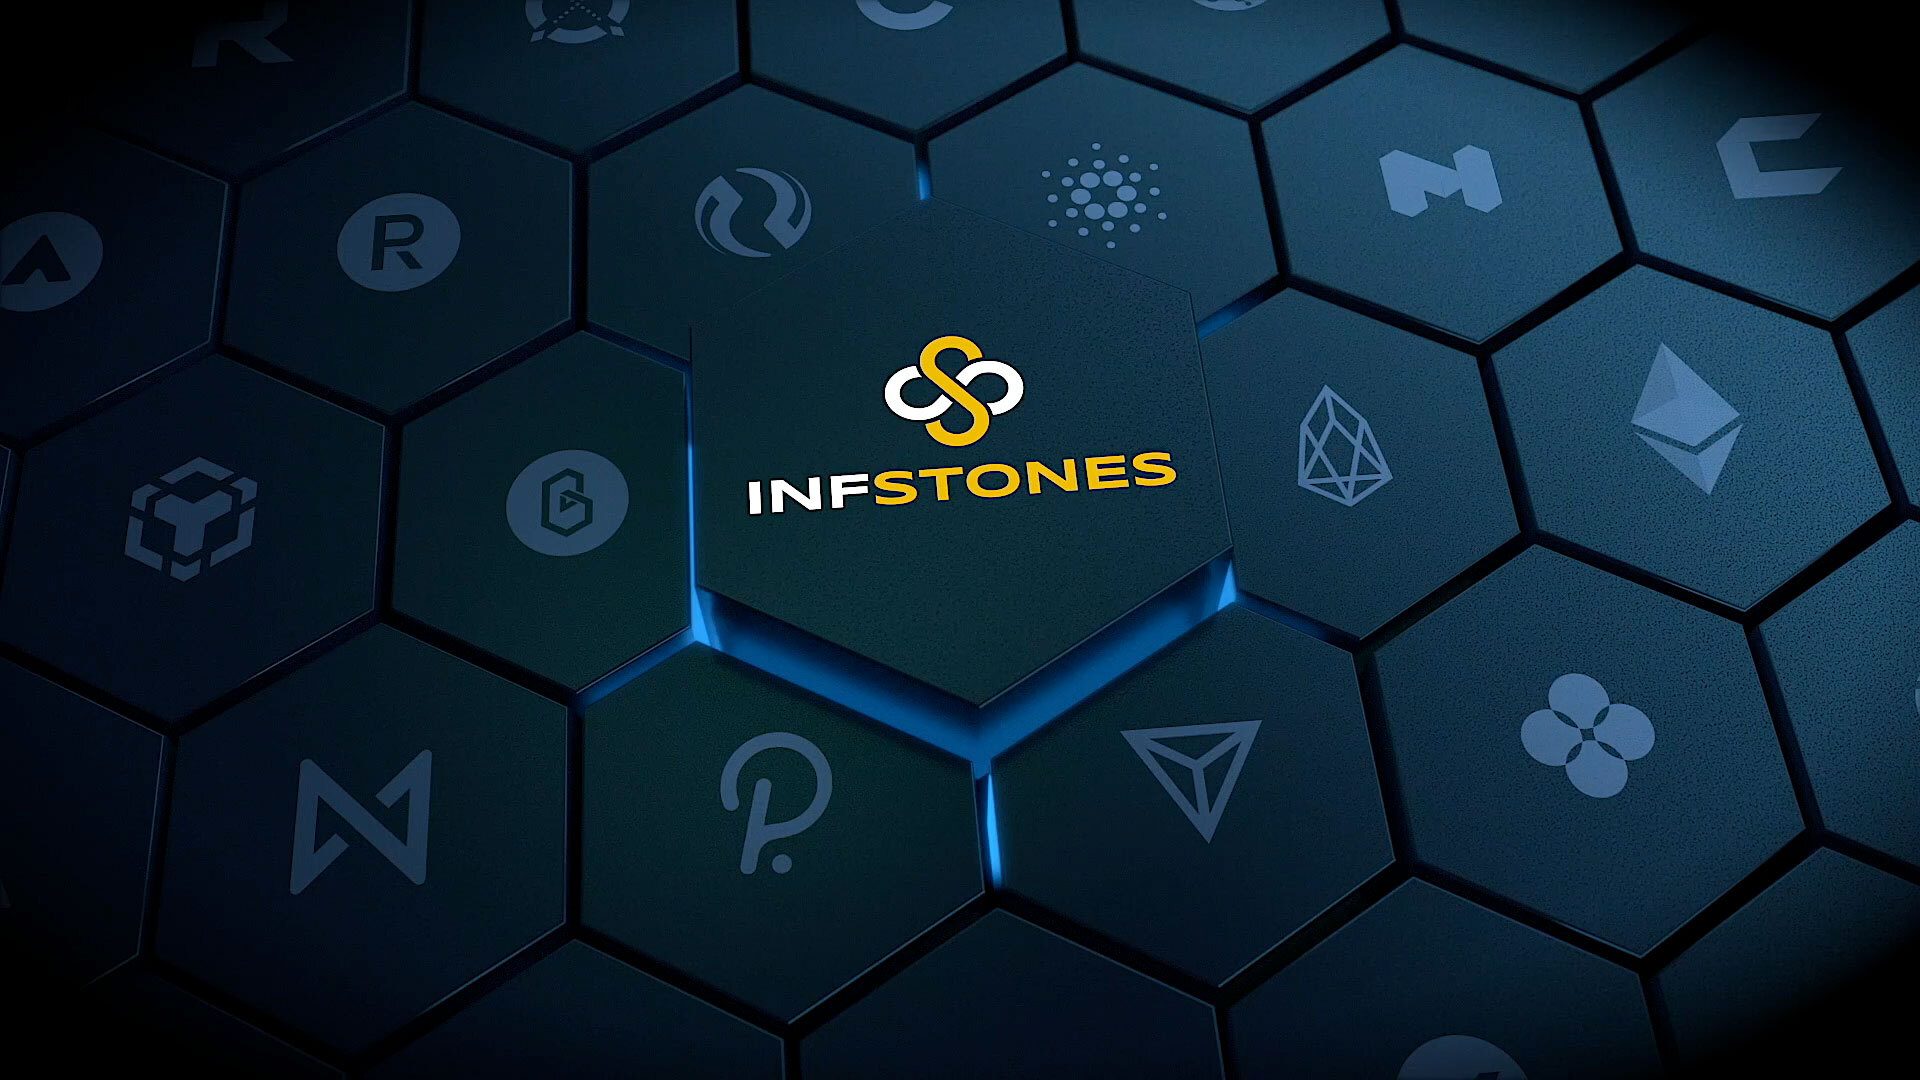 InfStonesTM là nhà cung cấp cơ sở hạ tầng blockchain hàng đầu thế giới. Các giải pháp của chúng tôi được tin dùng bởi nhiều thương hiệu lớn nhất trong ngành công nghiệp blockchain